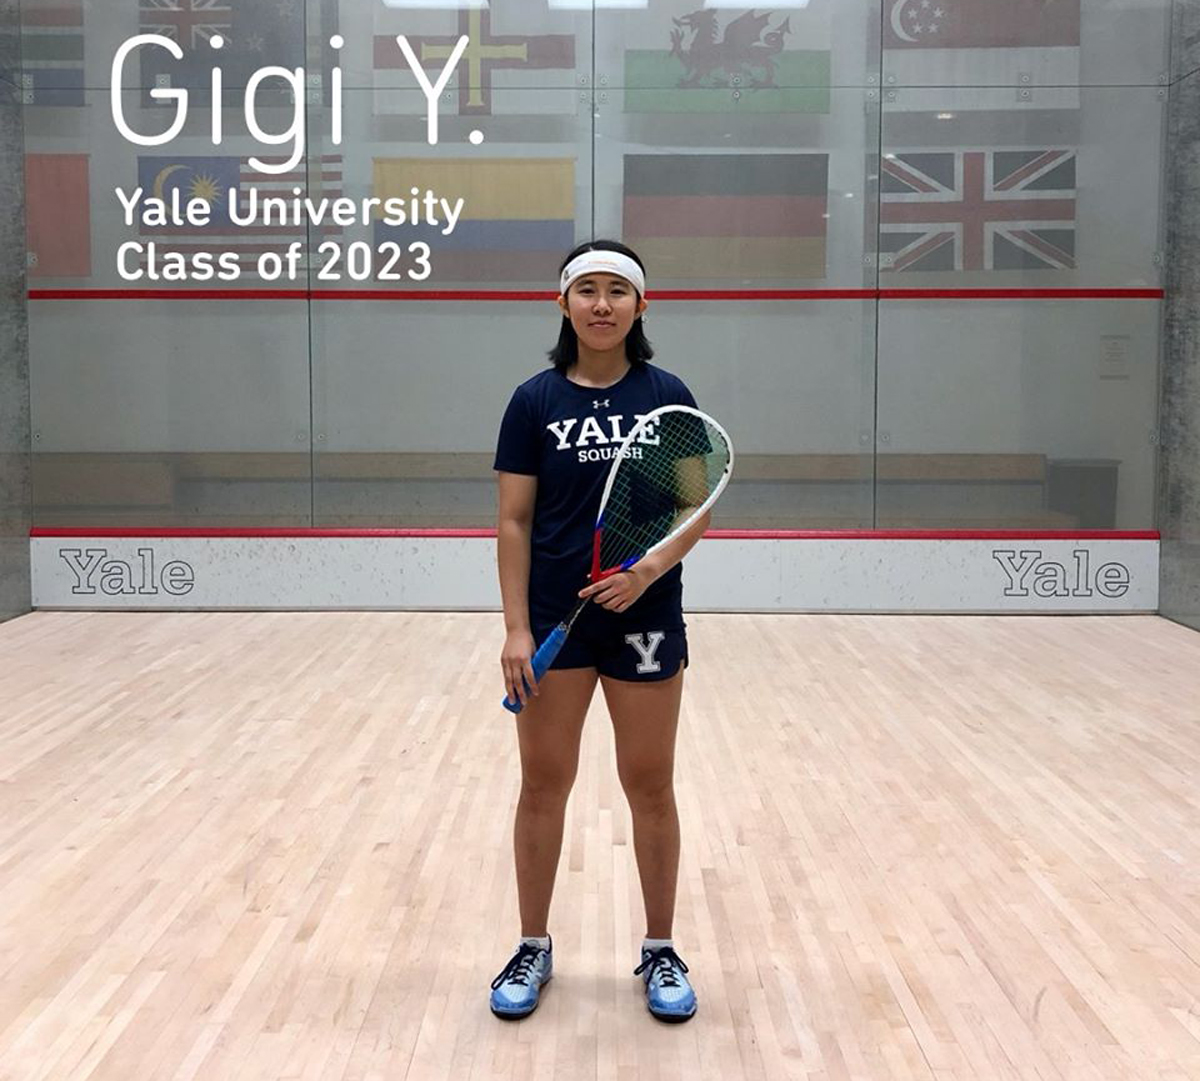 Gigi Y. (Macau, Trung Quốc) đến Đại học Yale từ đam mê khoa học và thể thao